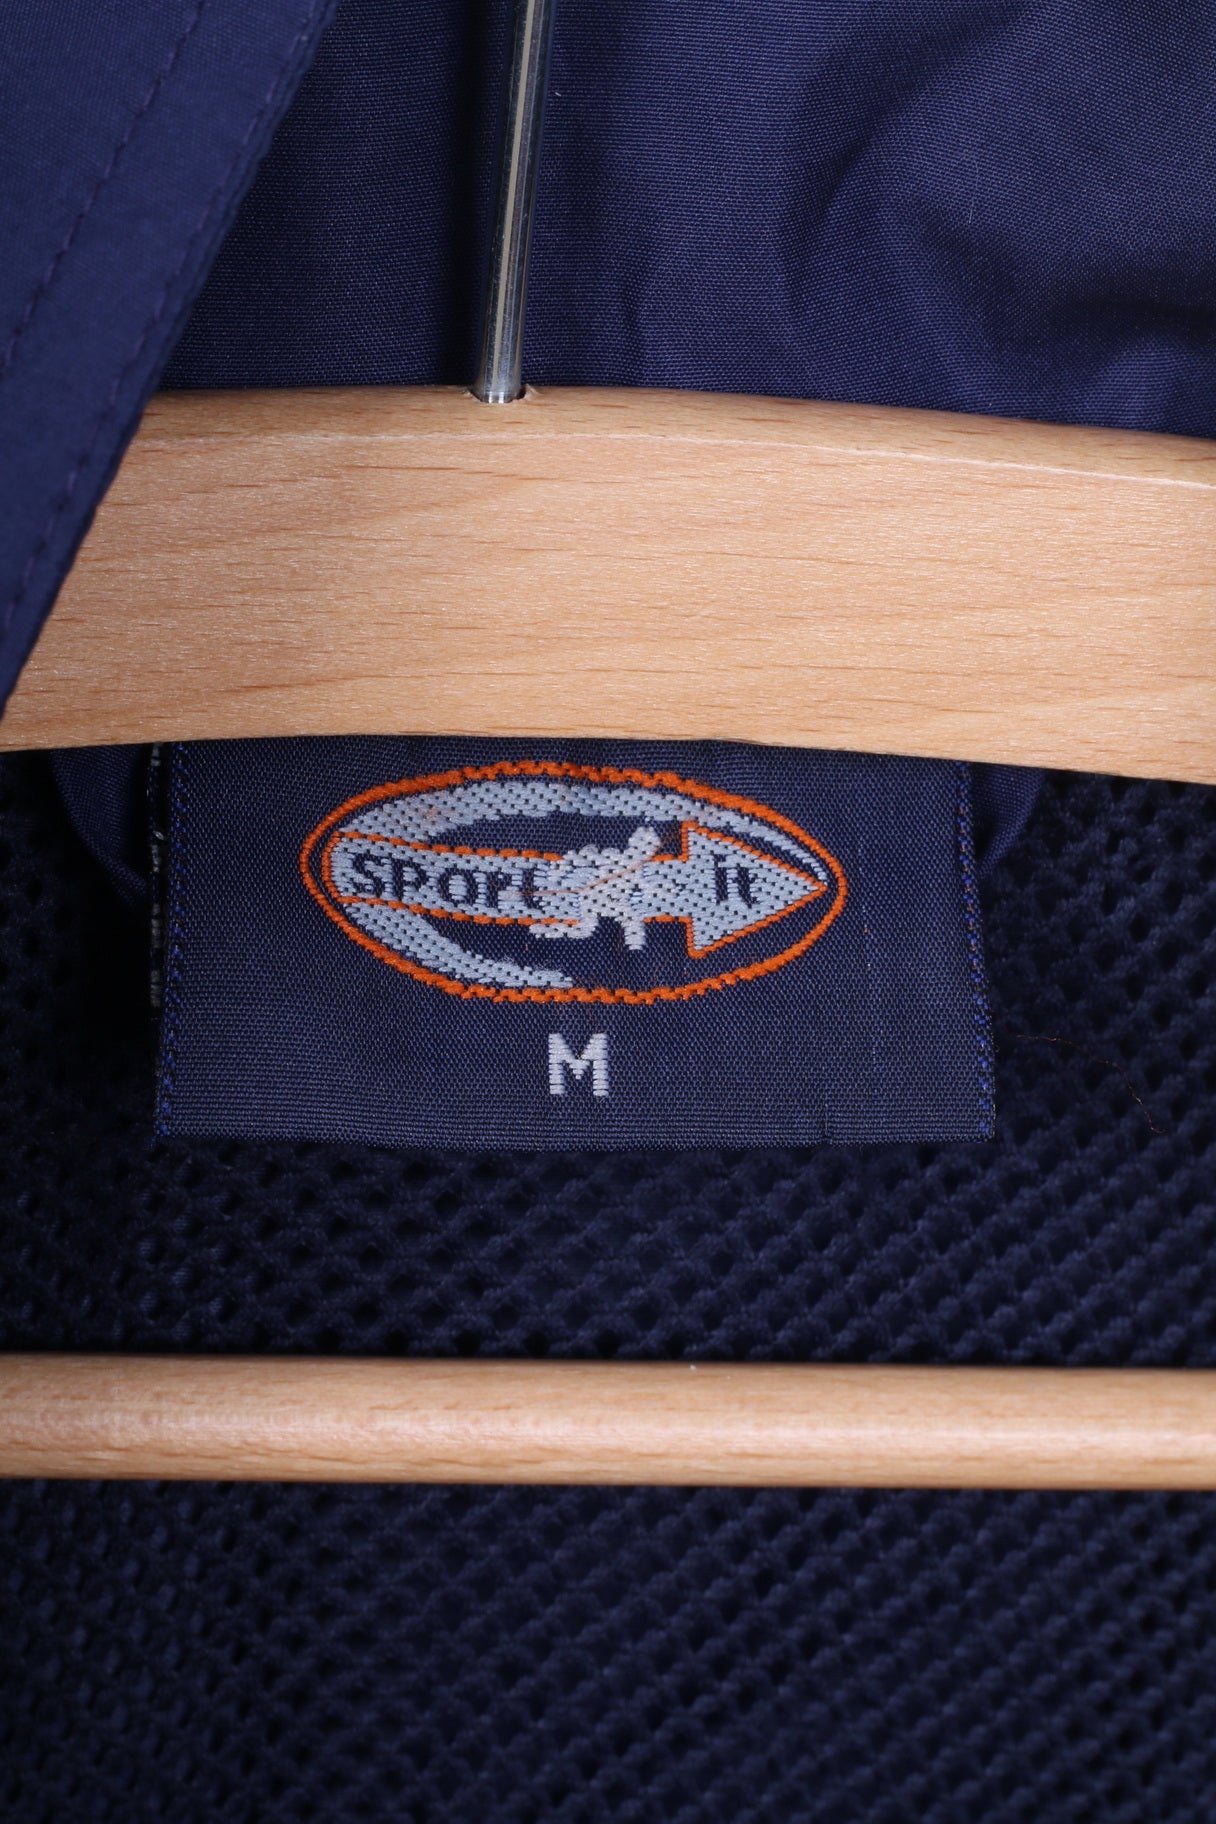 Sport It Mens M Jacket Lightweight Full Zipper Navy Sportswear Top